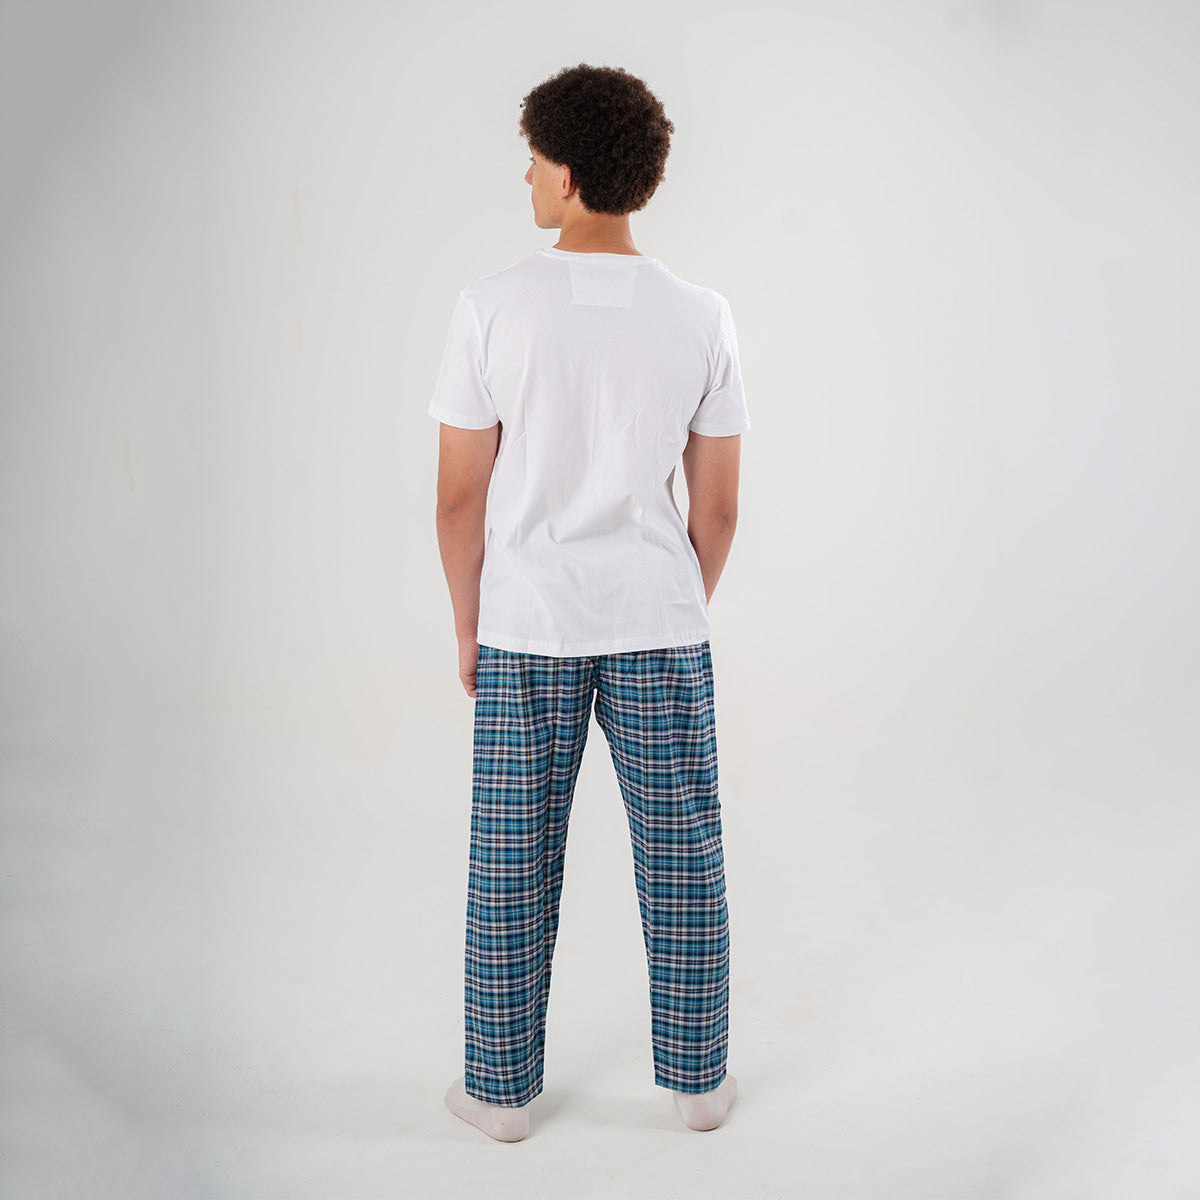 Turquoise Plaid Pyjama Pants set